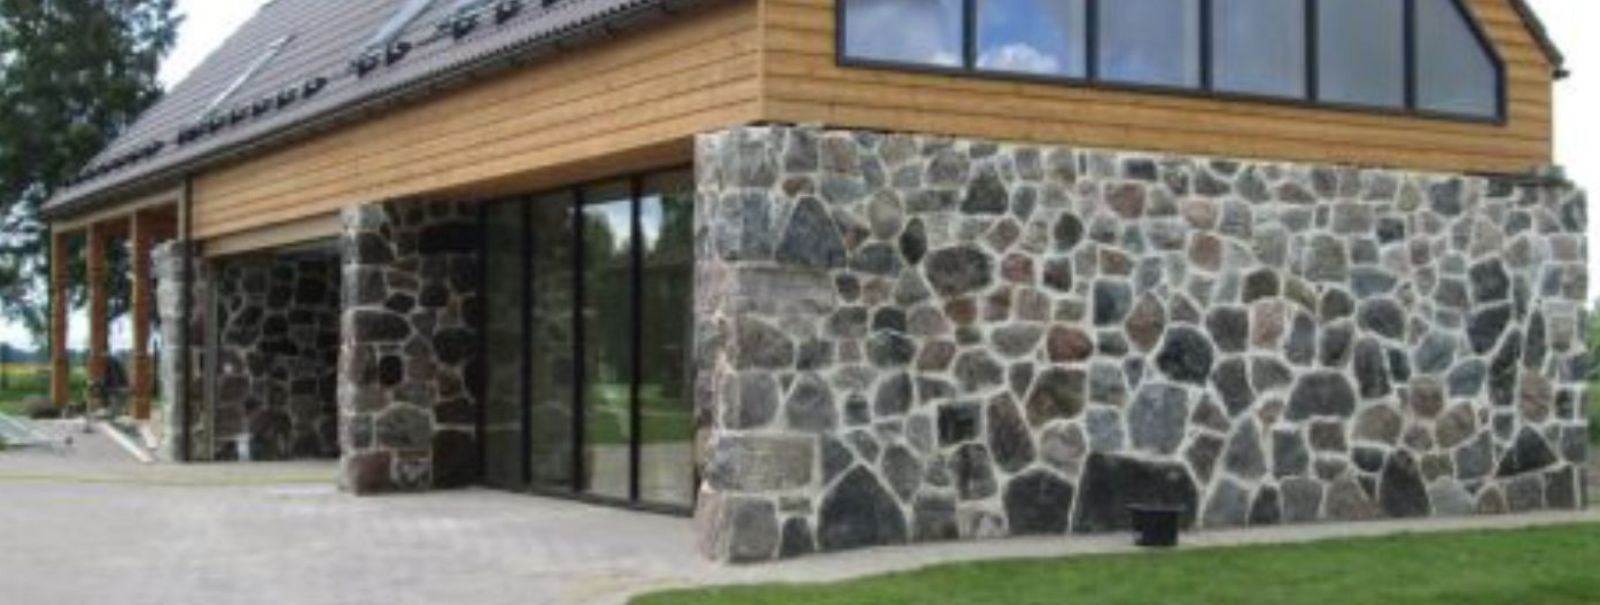 Kivi-Arne süda kuulub maakivile, Eesti ürgseimale ehitusmaterjalile.  Meie eesmärk on koostöös klientidega luua asju, mis sobivad ümbritsevasse keskkonda ja int